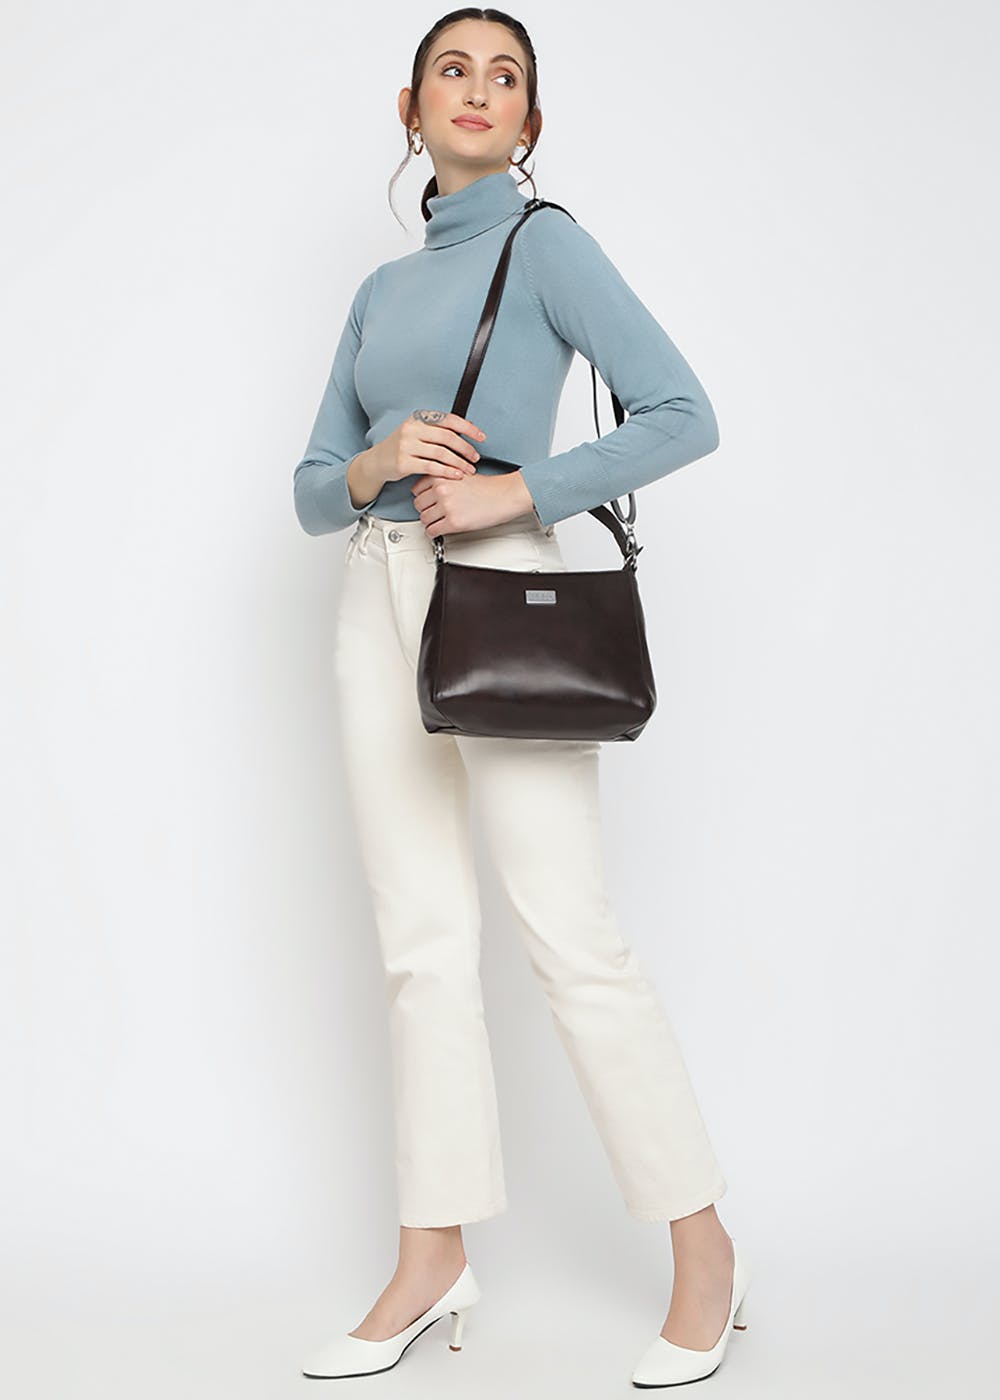 Get Pu Leather Top Handle Hobo Structured Handbag With Zip Closure Dark ...